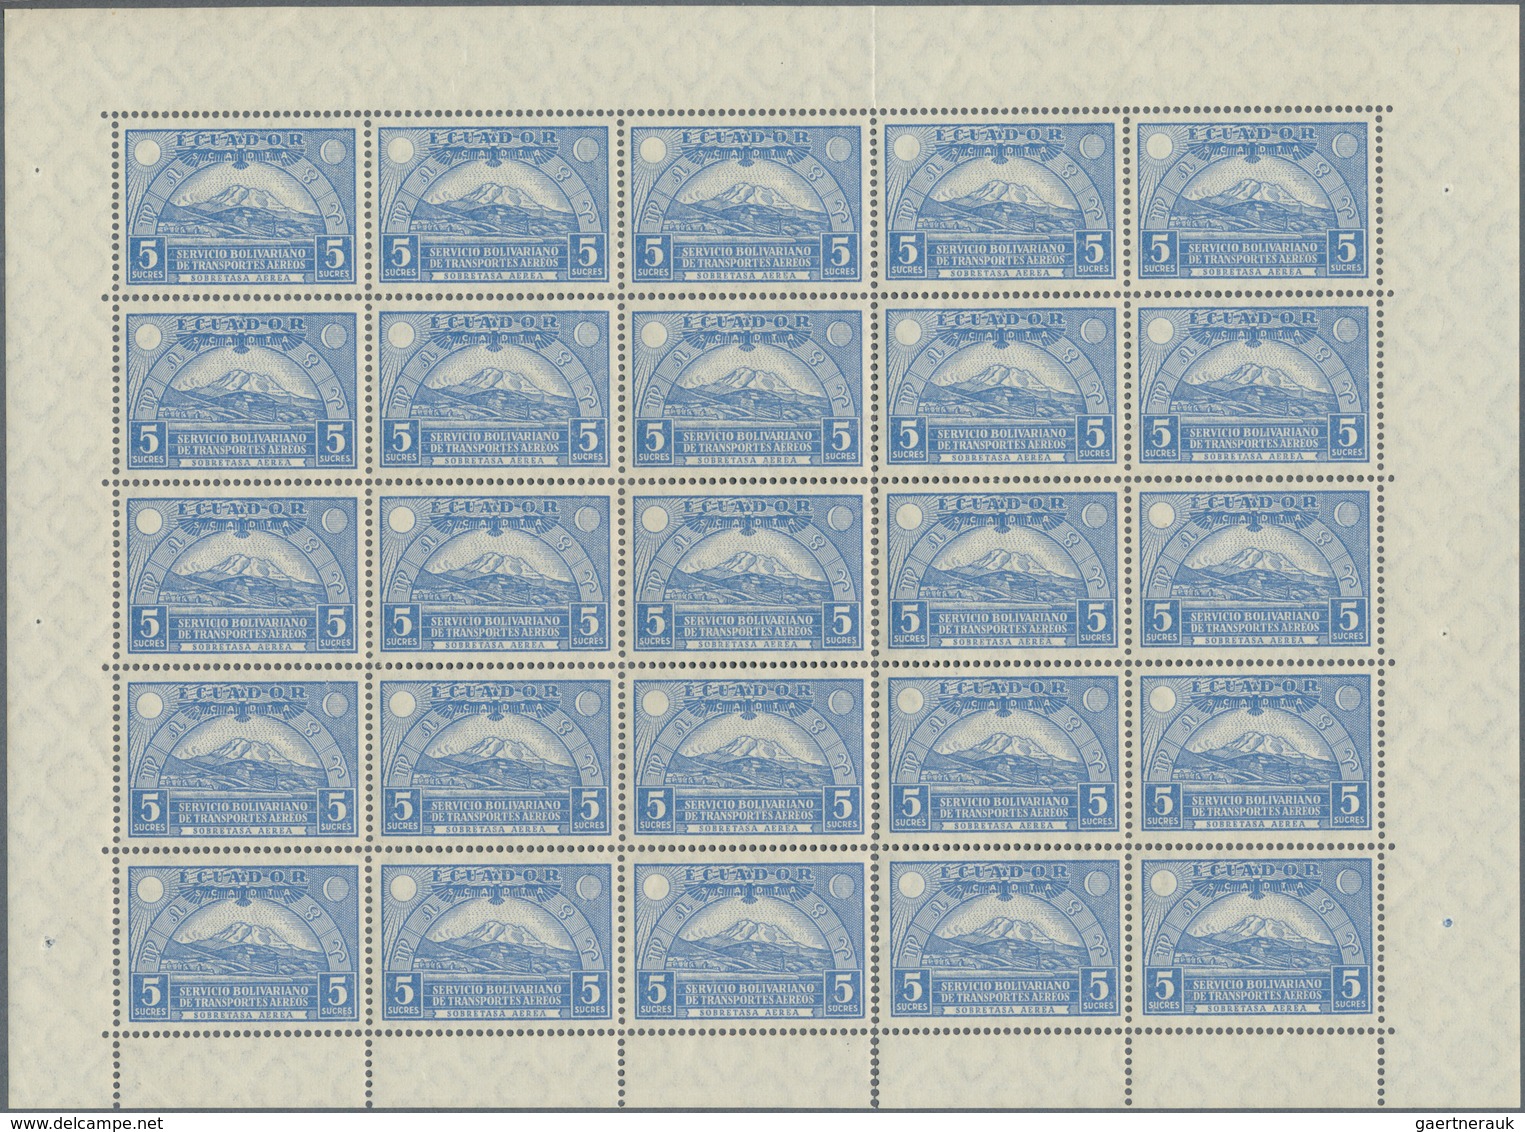 SCADTA - Ausgaben Für Ecuador: 1929, Pictorials, 5s. Ultramarine, 86 Stamps Within Units, Unmounted - Equateur